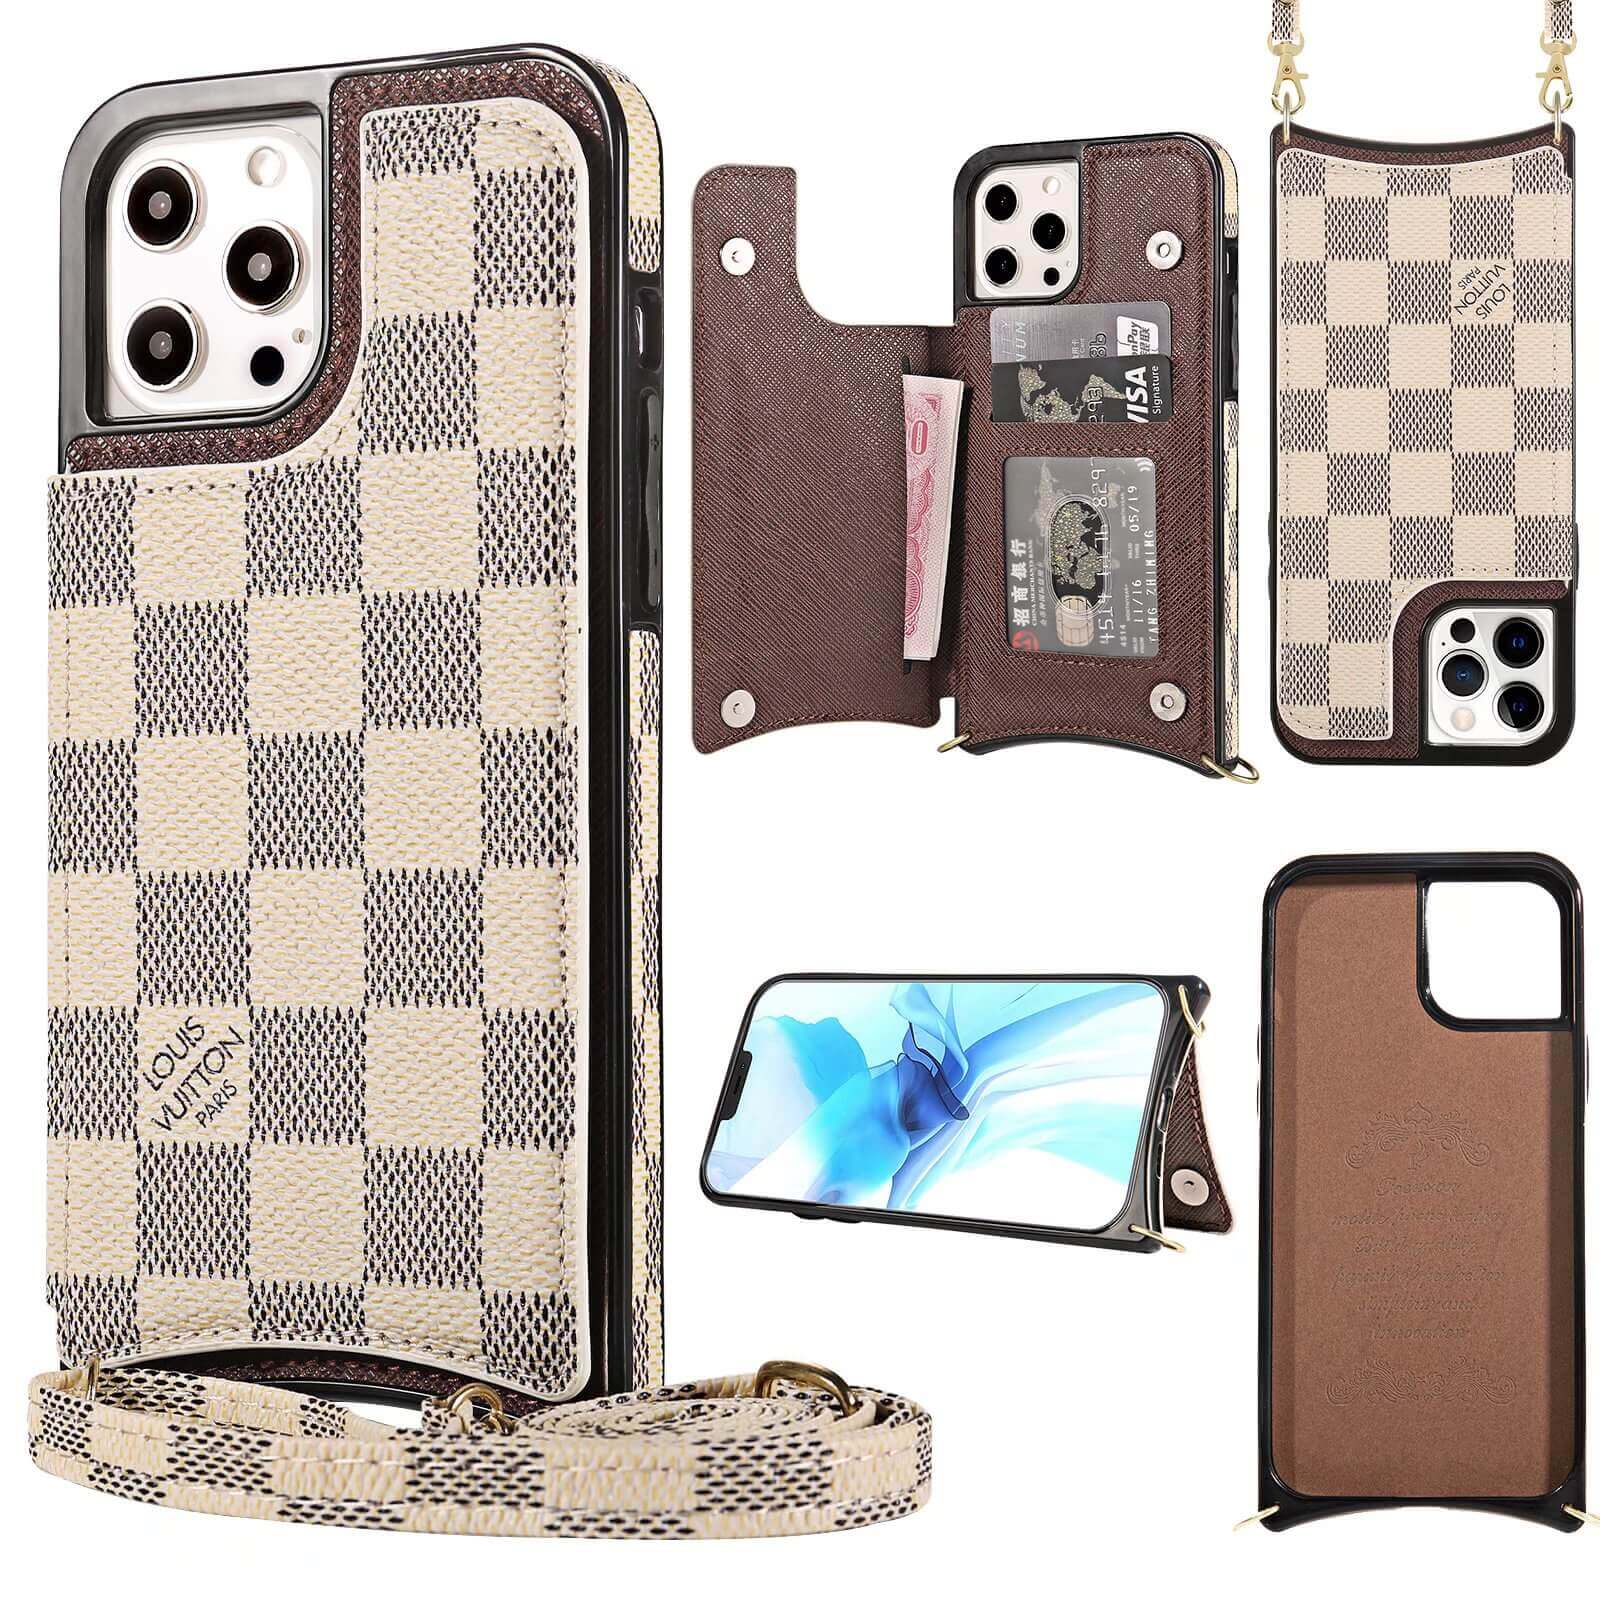 Louis Vuitton iPhone 7/8 Plus Cases - Luxury Phone Case Shop